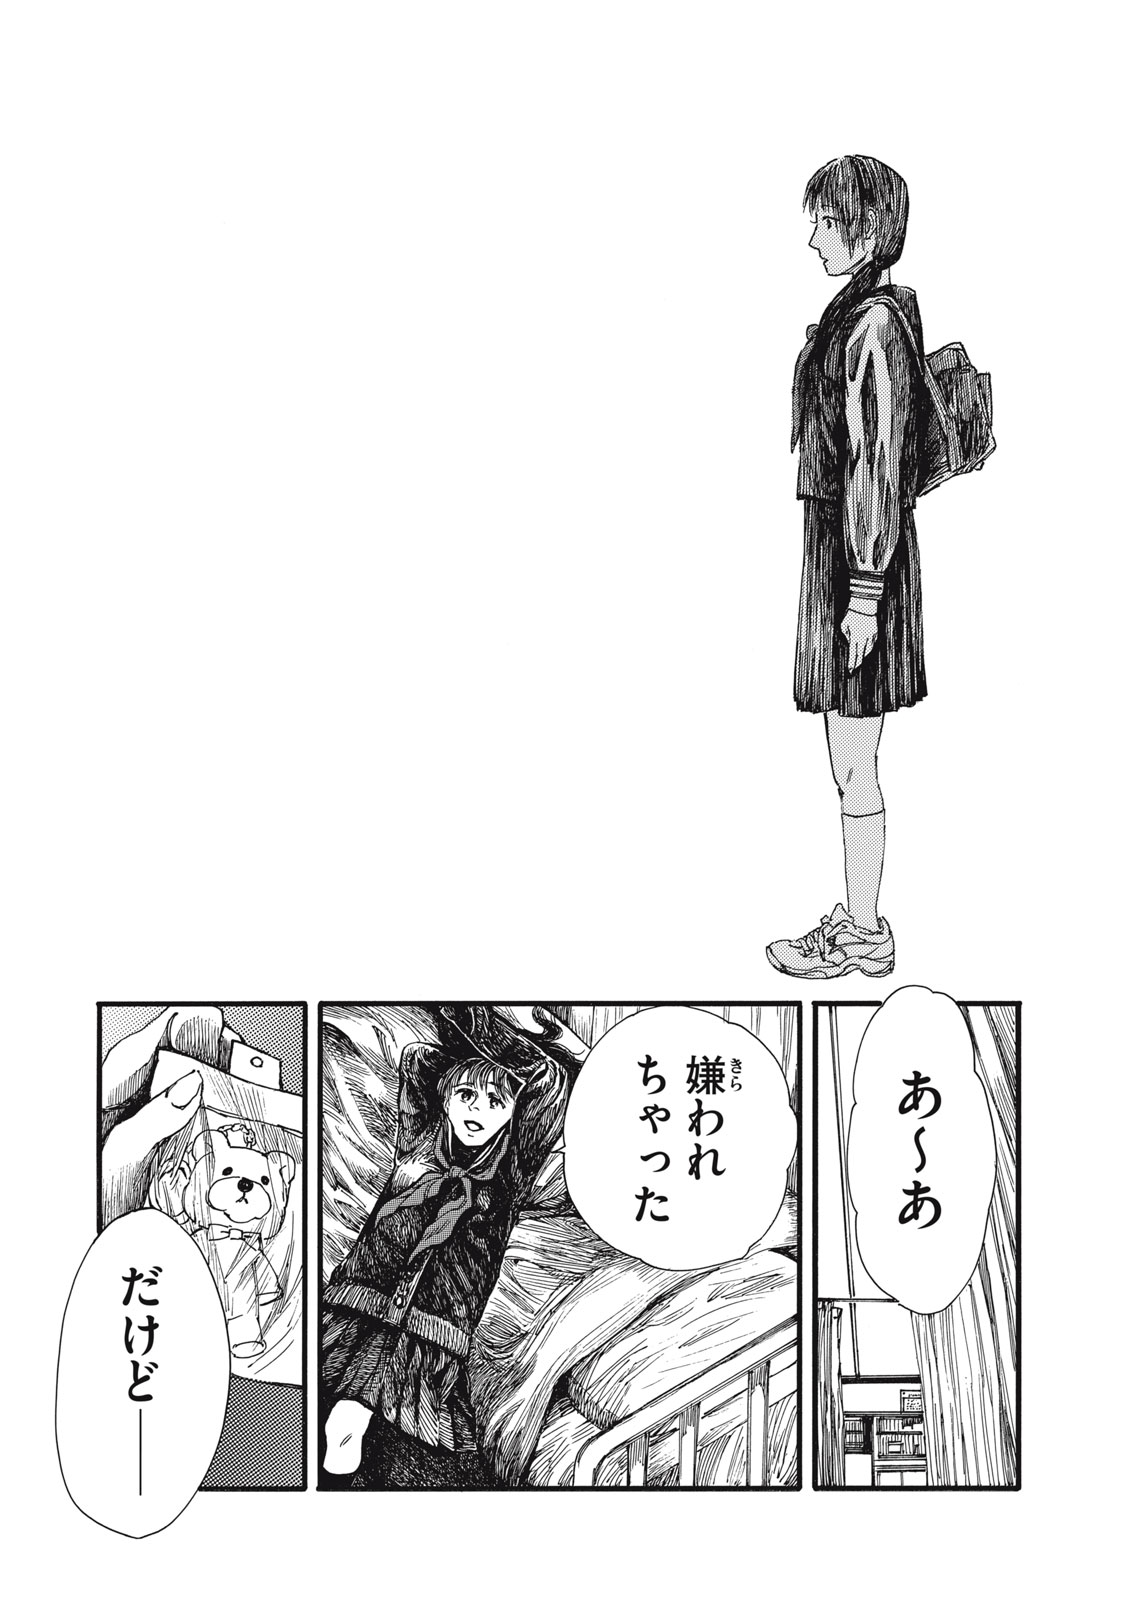 Watashi no Hara no Naka no Bakemono - Chapter 37 - Page 11